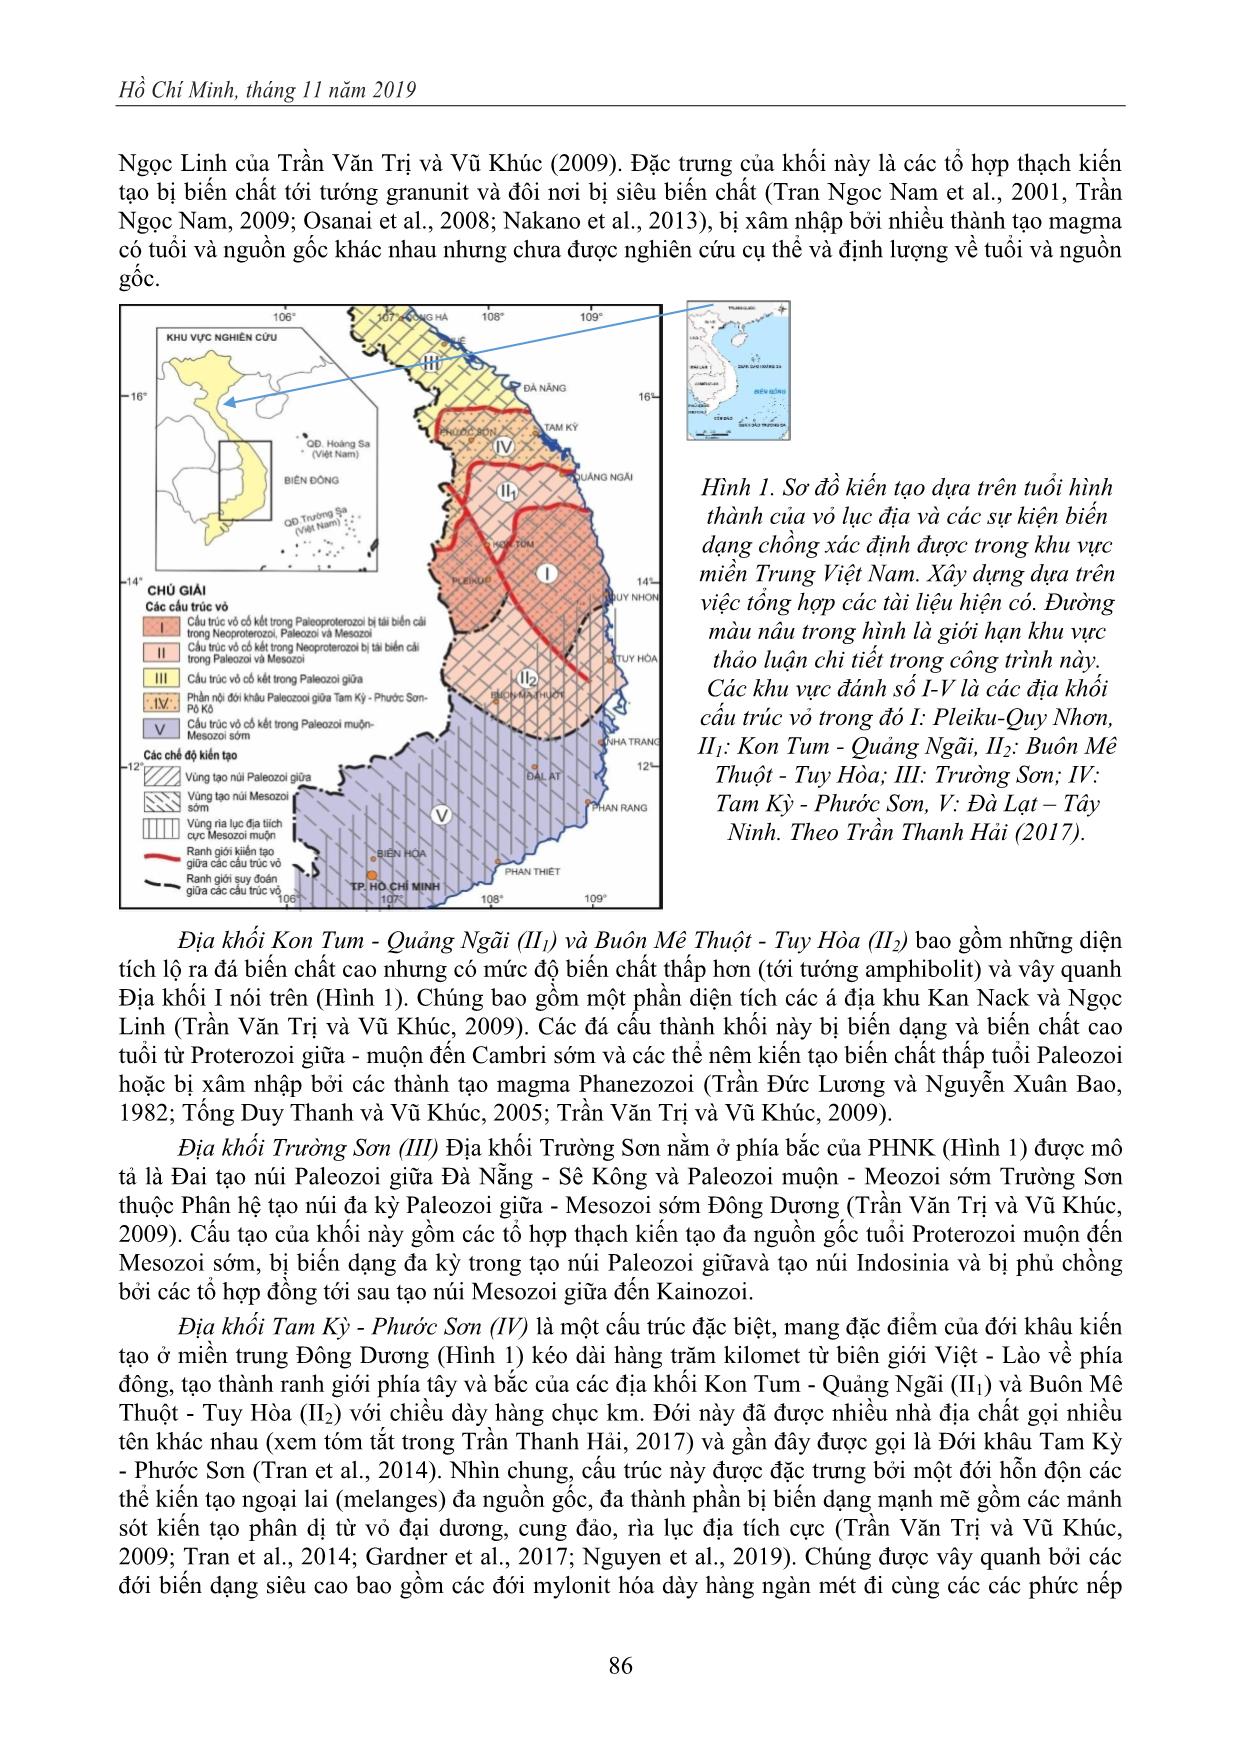 Sự tạo vỏ tiền Cambri trong phức hệ nhân biến chất Kon Tum (PNBK): bằng chứng và tồn tại cho một mô hình kiến tạo hiện đại trang 2